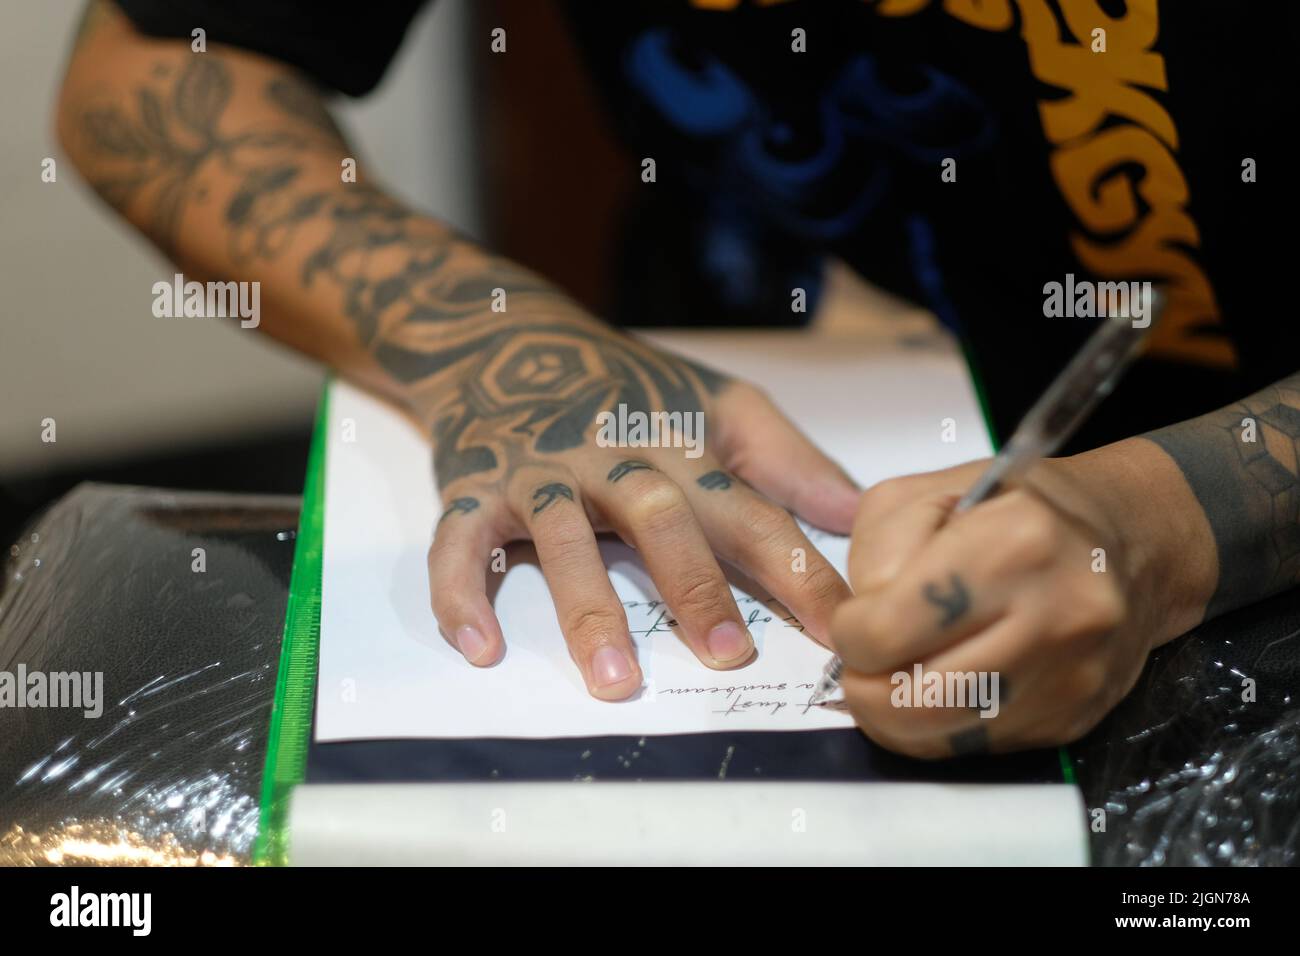 Männlicher Tattoo-Künstler, Arme gefüllt mit eingeklebten Designs, Schablonen kursive Schrift auf weißem Papier mit einem Stift zur Vorbereitung auf eine Tattoo-Sitzung. Stockfoto